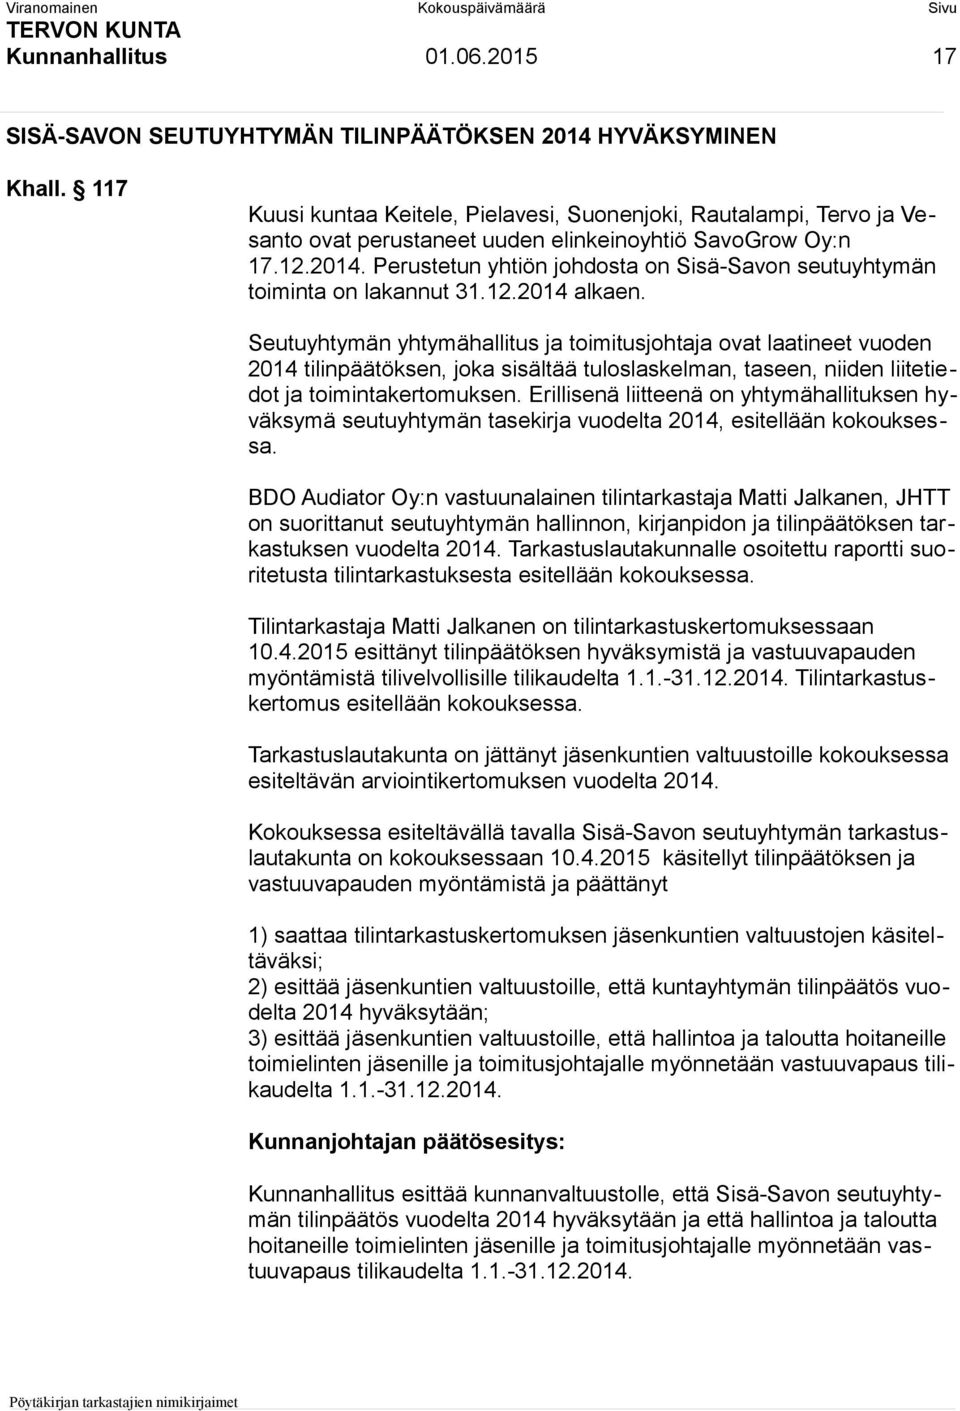 Perustetun yhtiön johdosta on Sisä-Savon seutuyhtymän toiminta on lakannut 31.12.2014 alkaen.